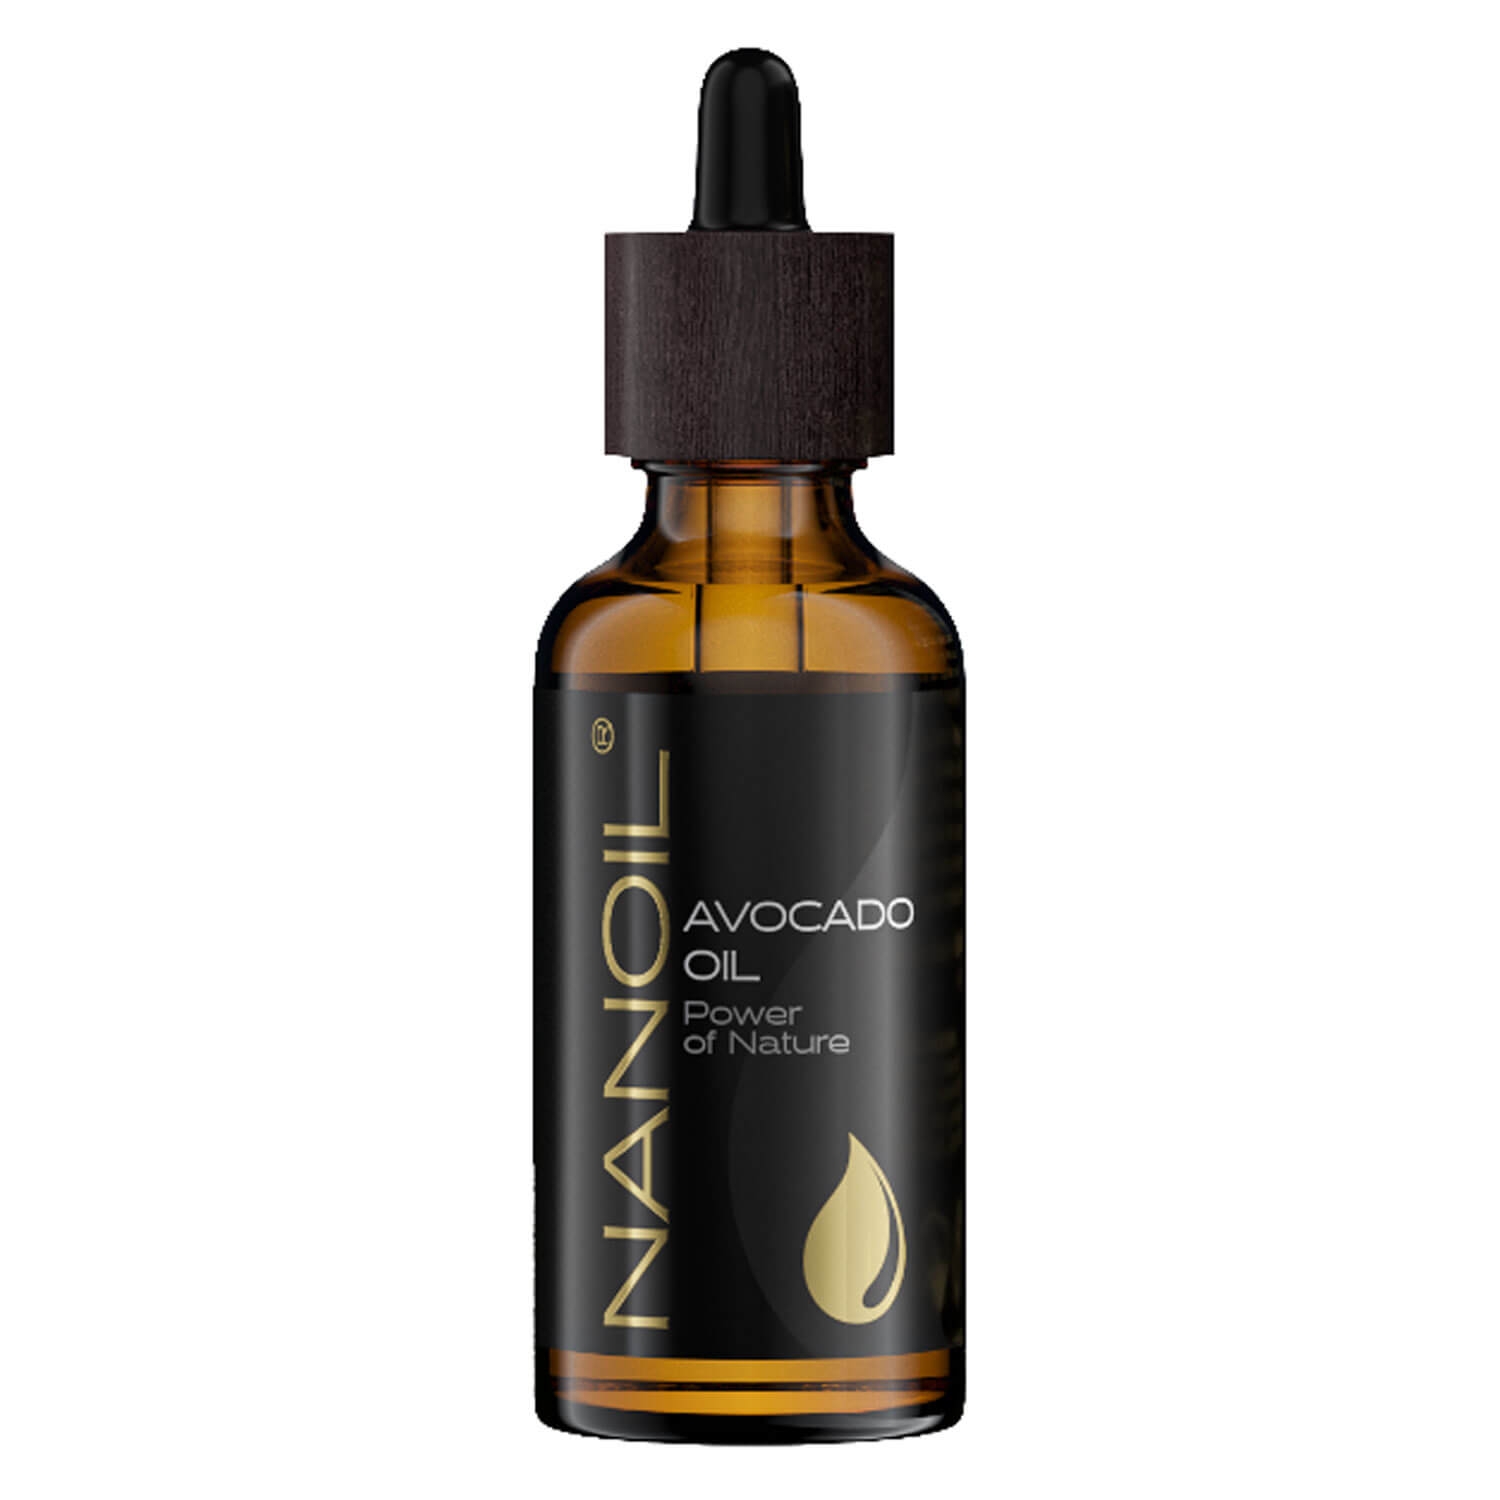 Produktbild von Nanoil - Avocado Oil